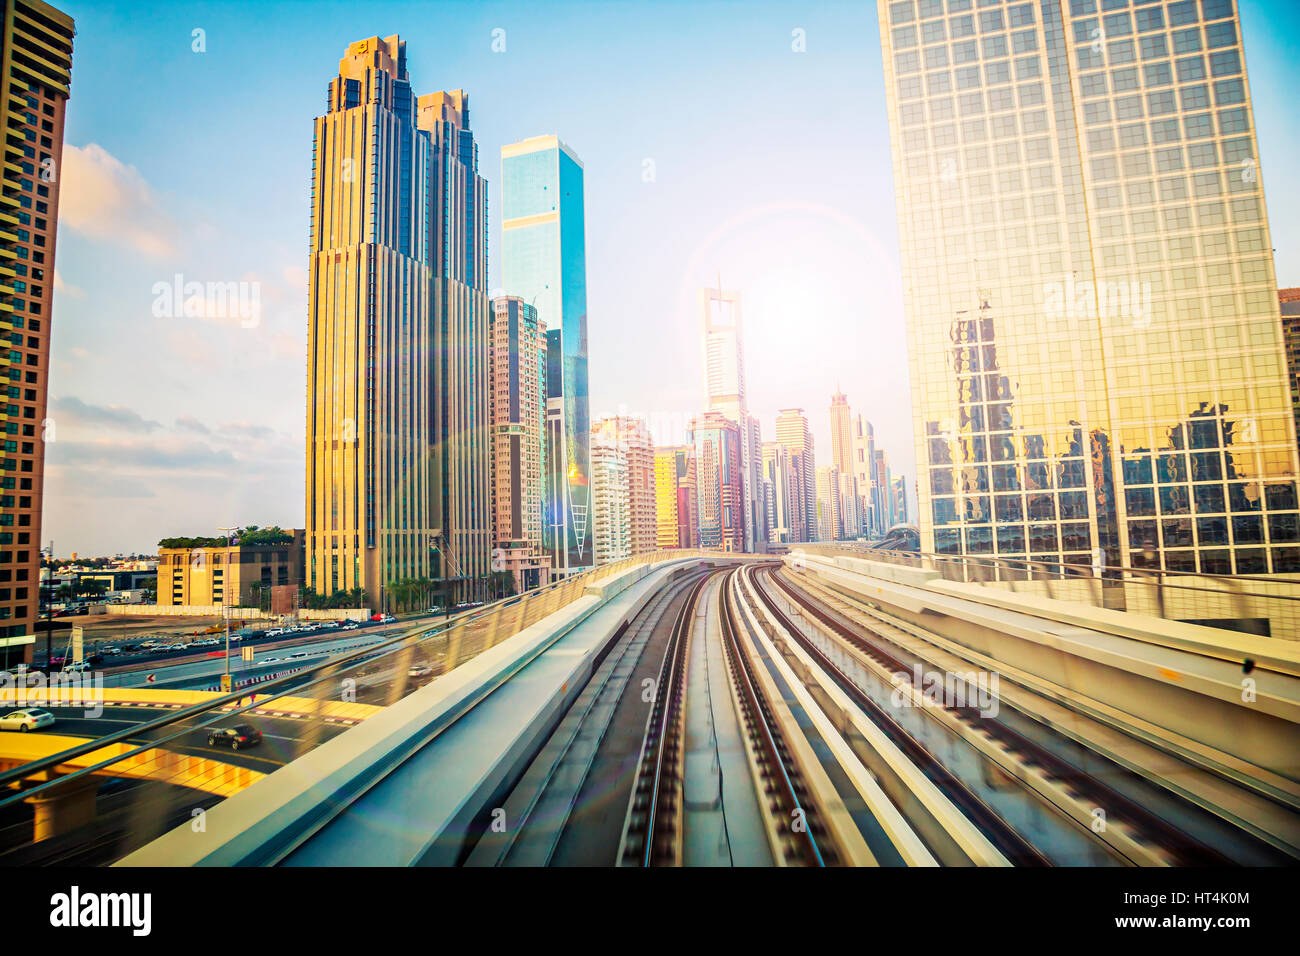 Ferrocarril en Dubai, el Jeque Zayed Road, con edificios de cristal futurista Foto de stock